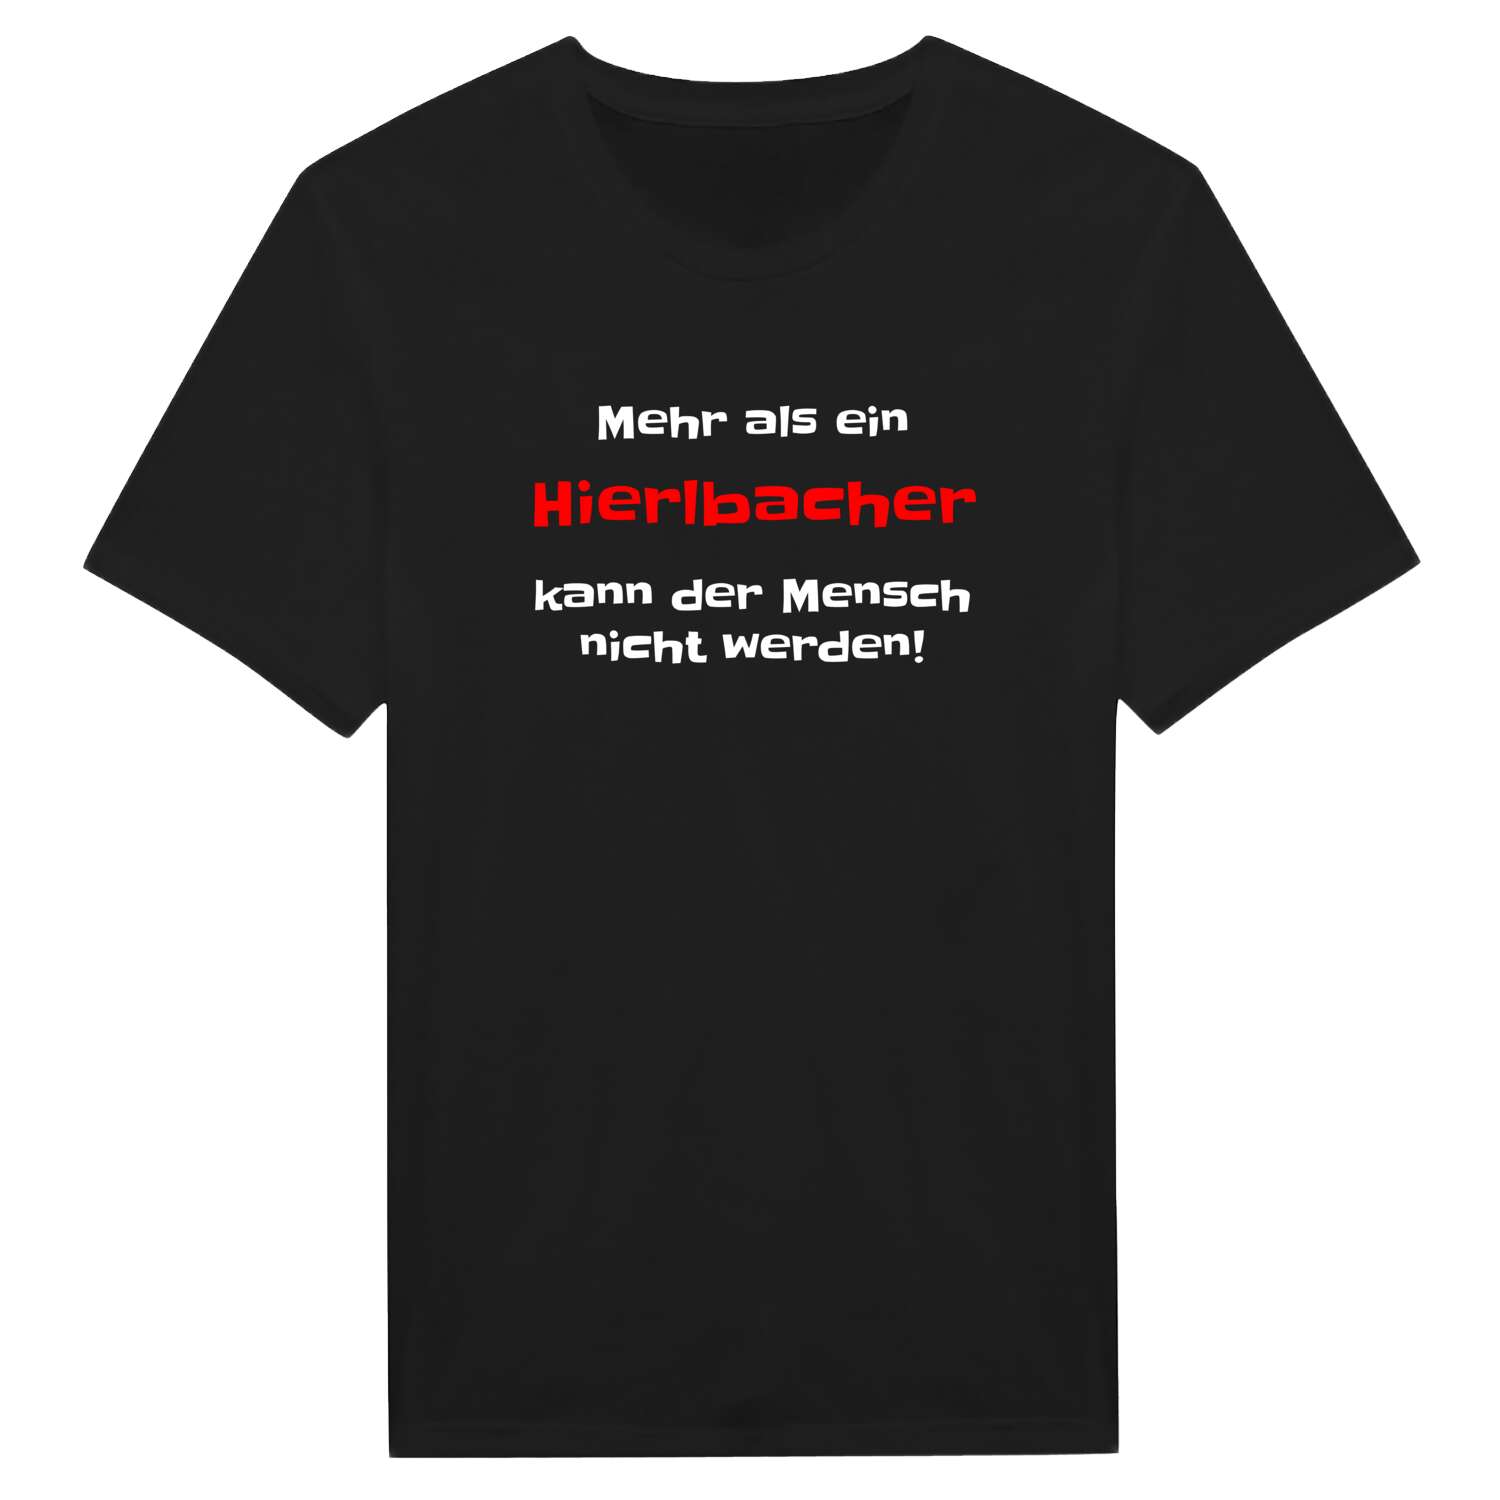 Hierlbach T-Shirt »Mehr als ein«